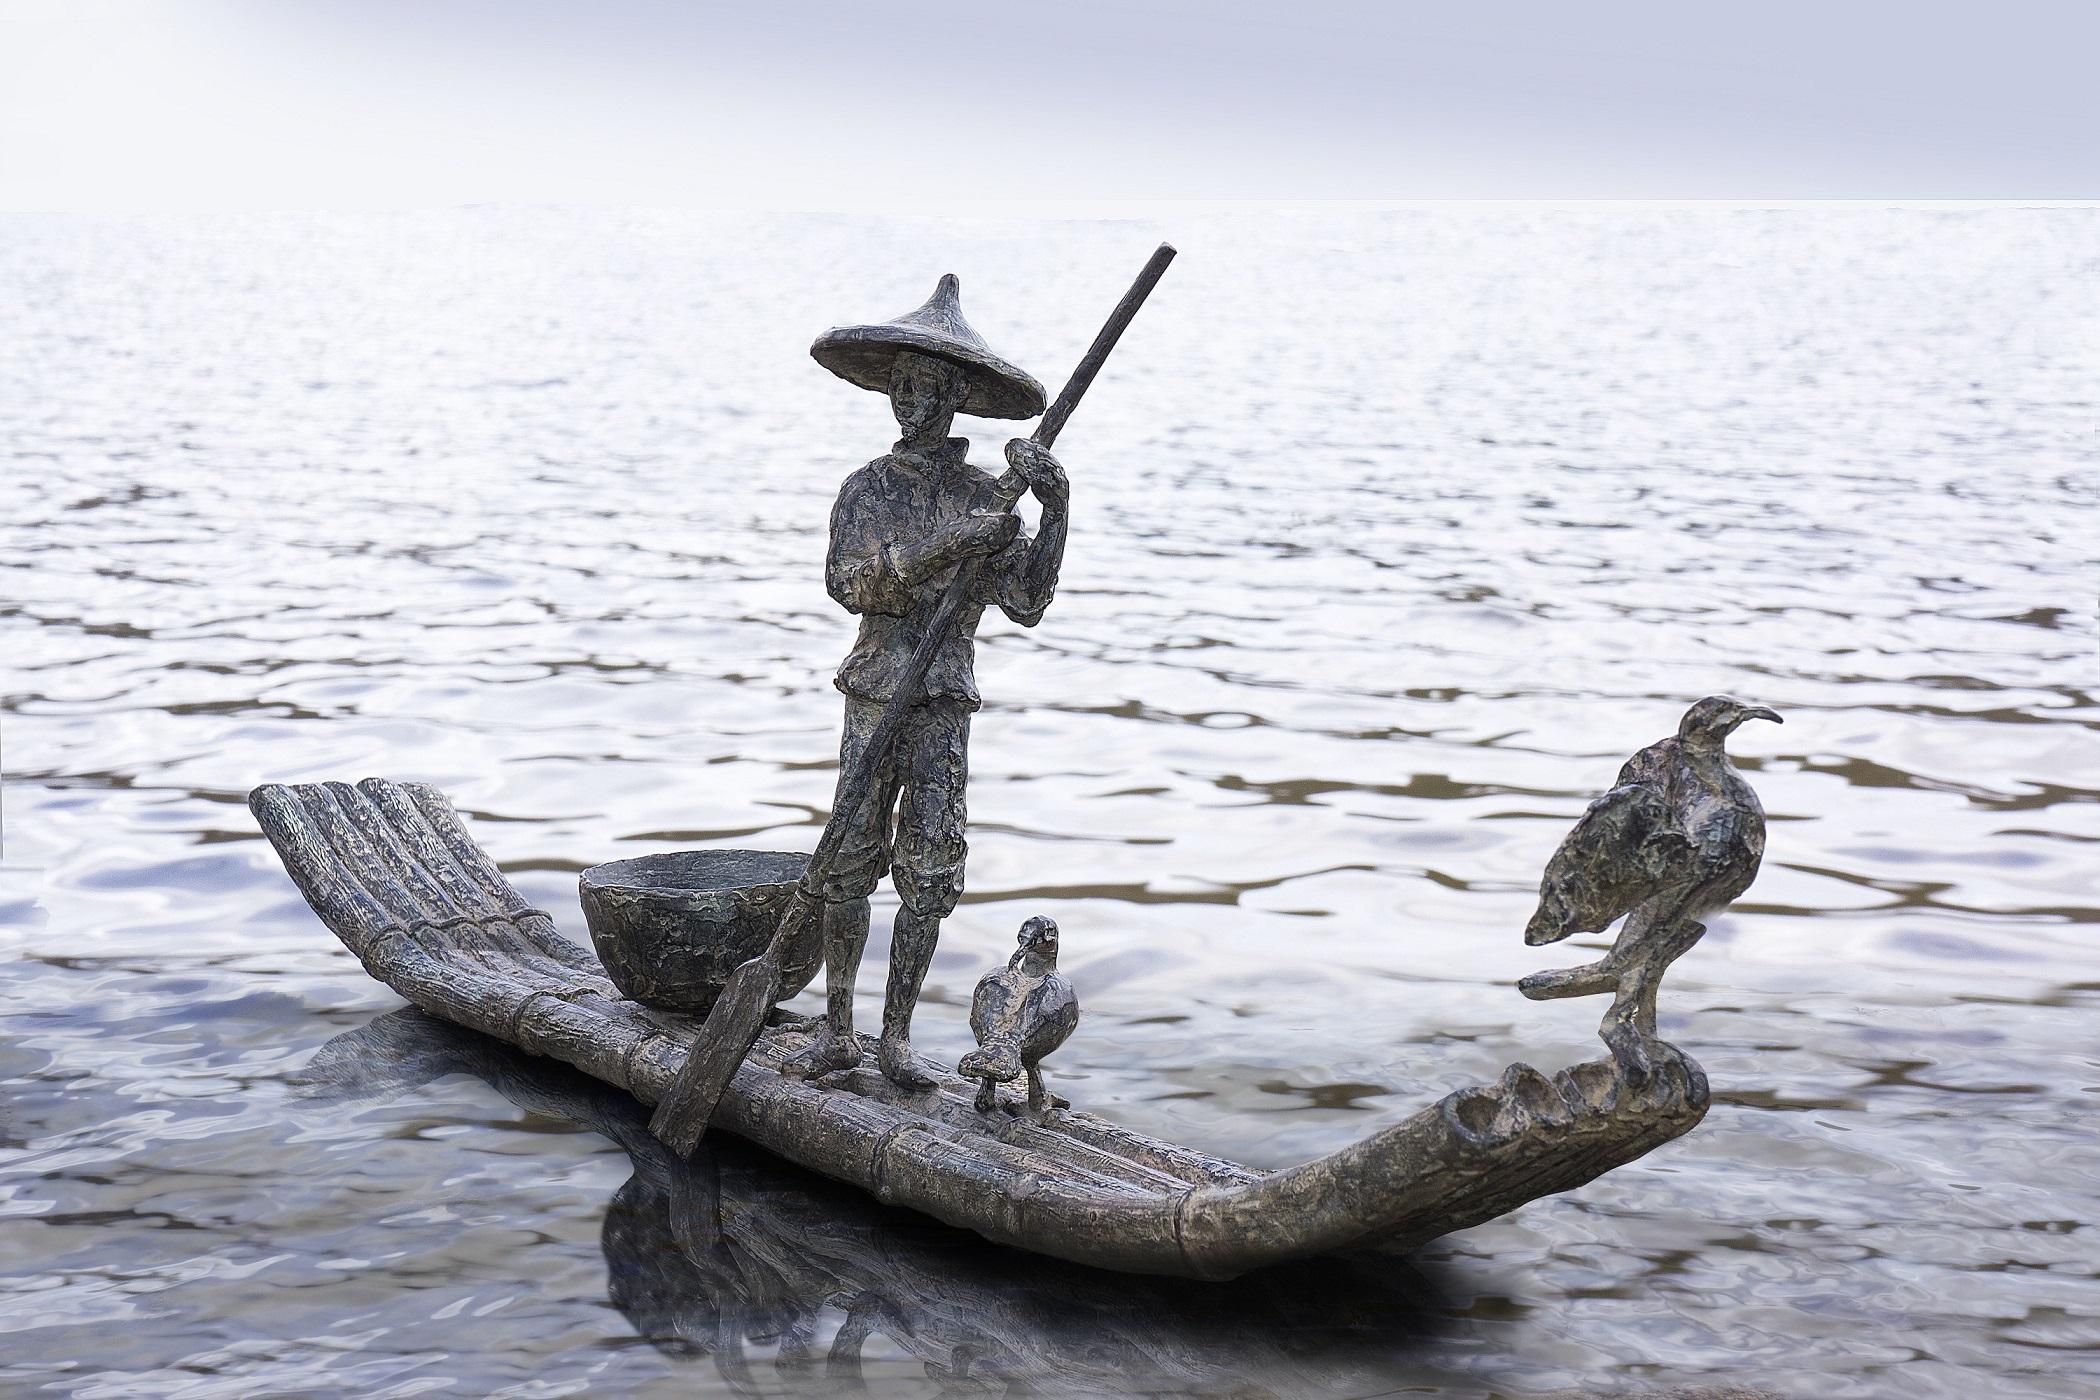 Cormorant Fishing ist eine Bronzeskulptur der französischen Künstlerin Marine de Soos mit den Maßen 20 × 58 × 8 cm (7,9 × 22,8 × 3,1 in). 
Die Skulptur ist signiert und nummeriert, gehört zu einer limitierten Auflage von 8 Exemplaren + 4